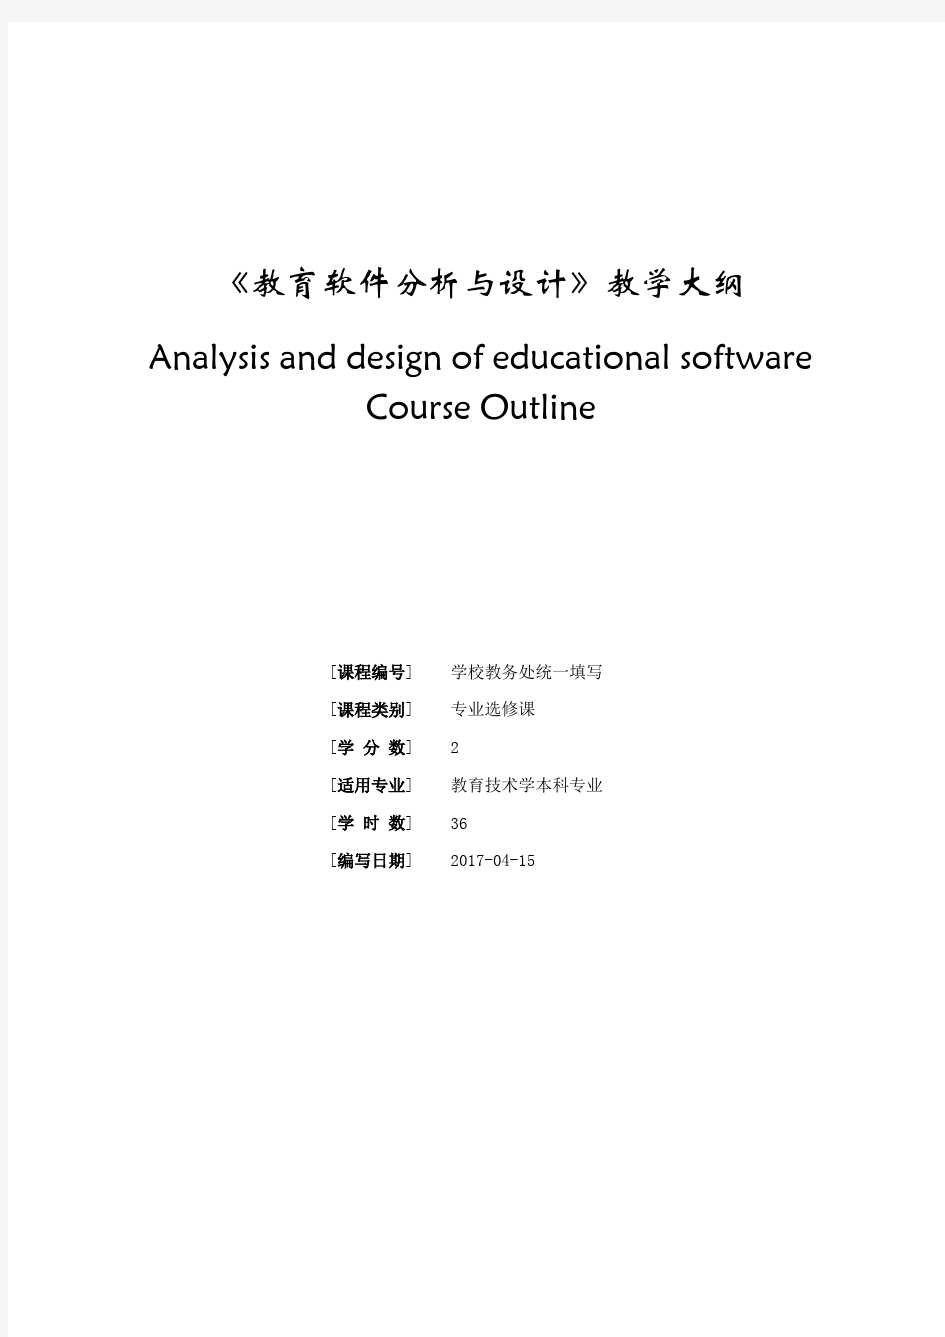 《教育软件分析与设计》教学大纲2017-4-1